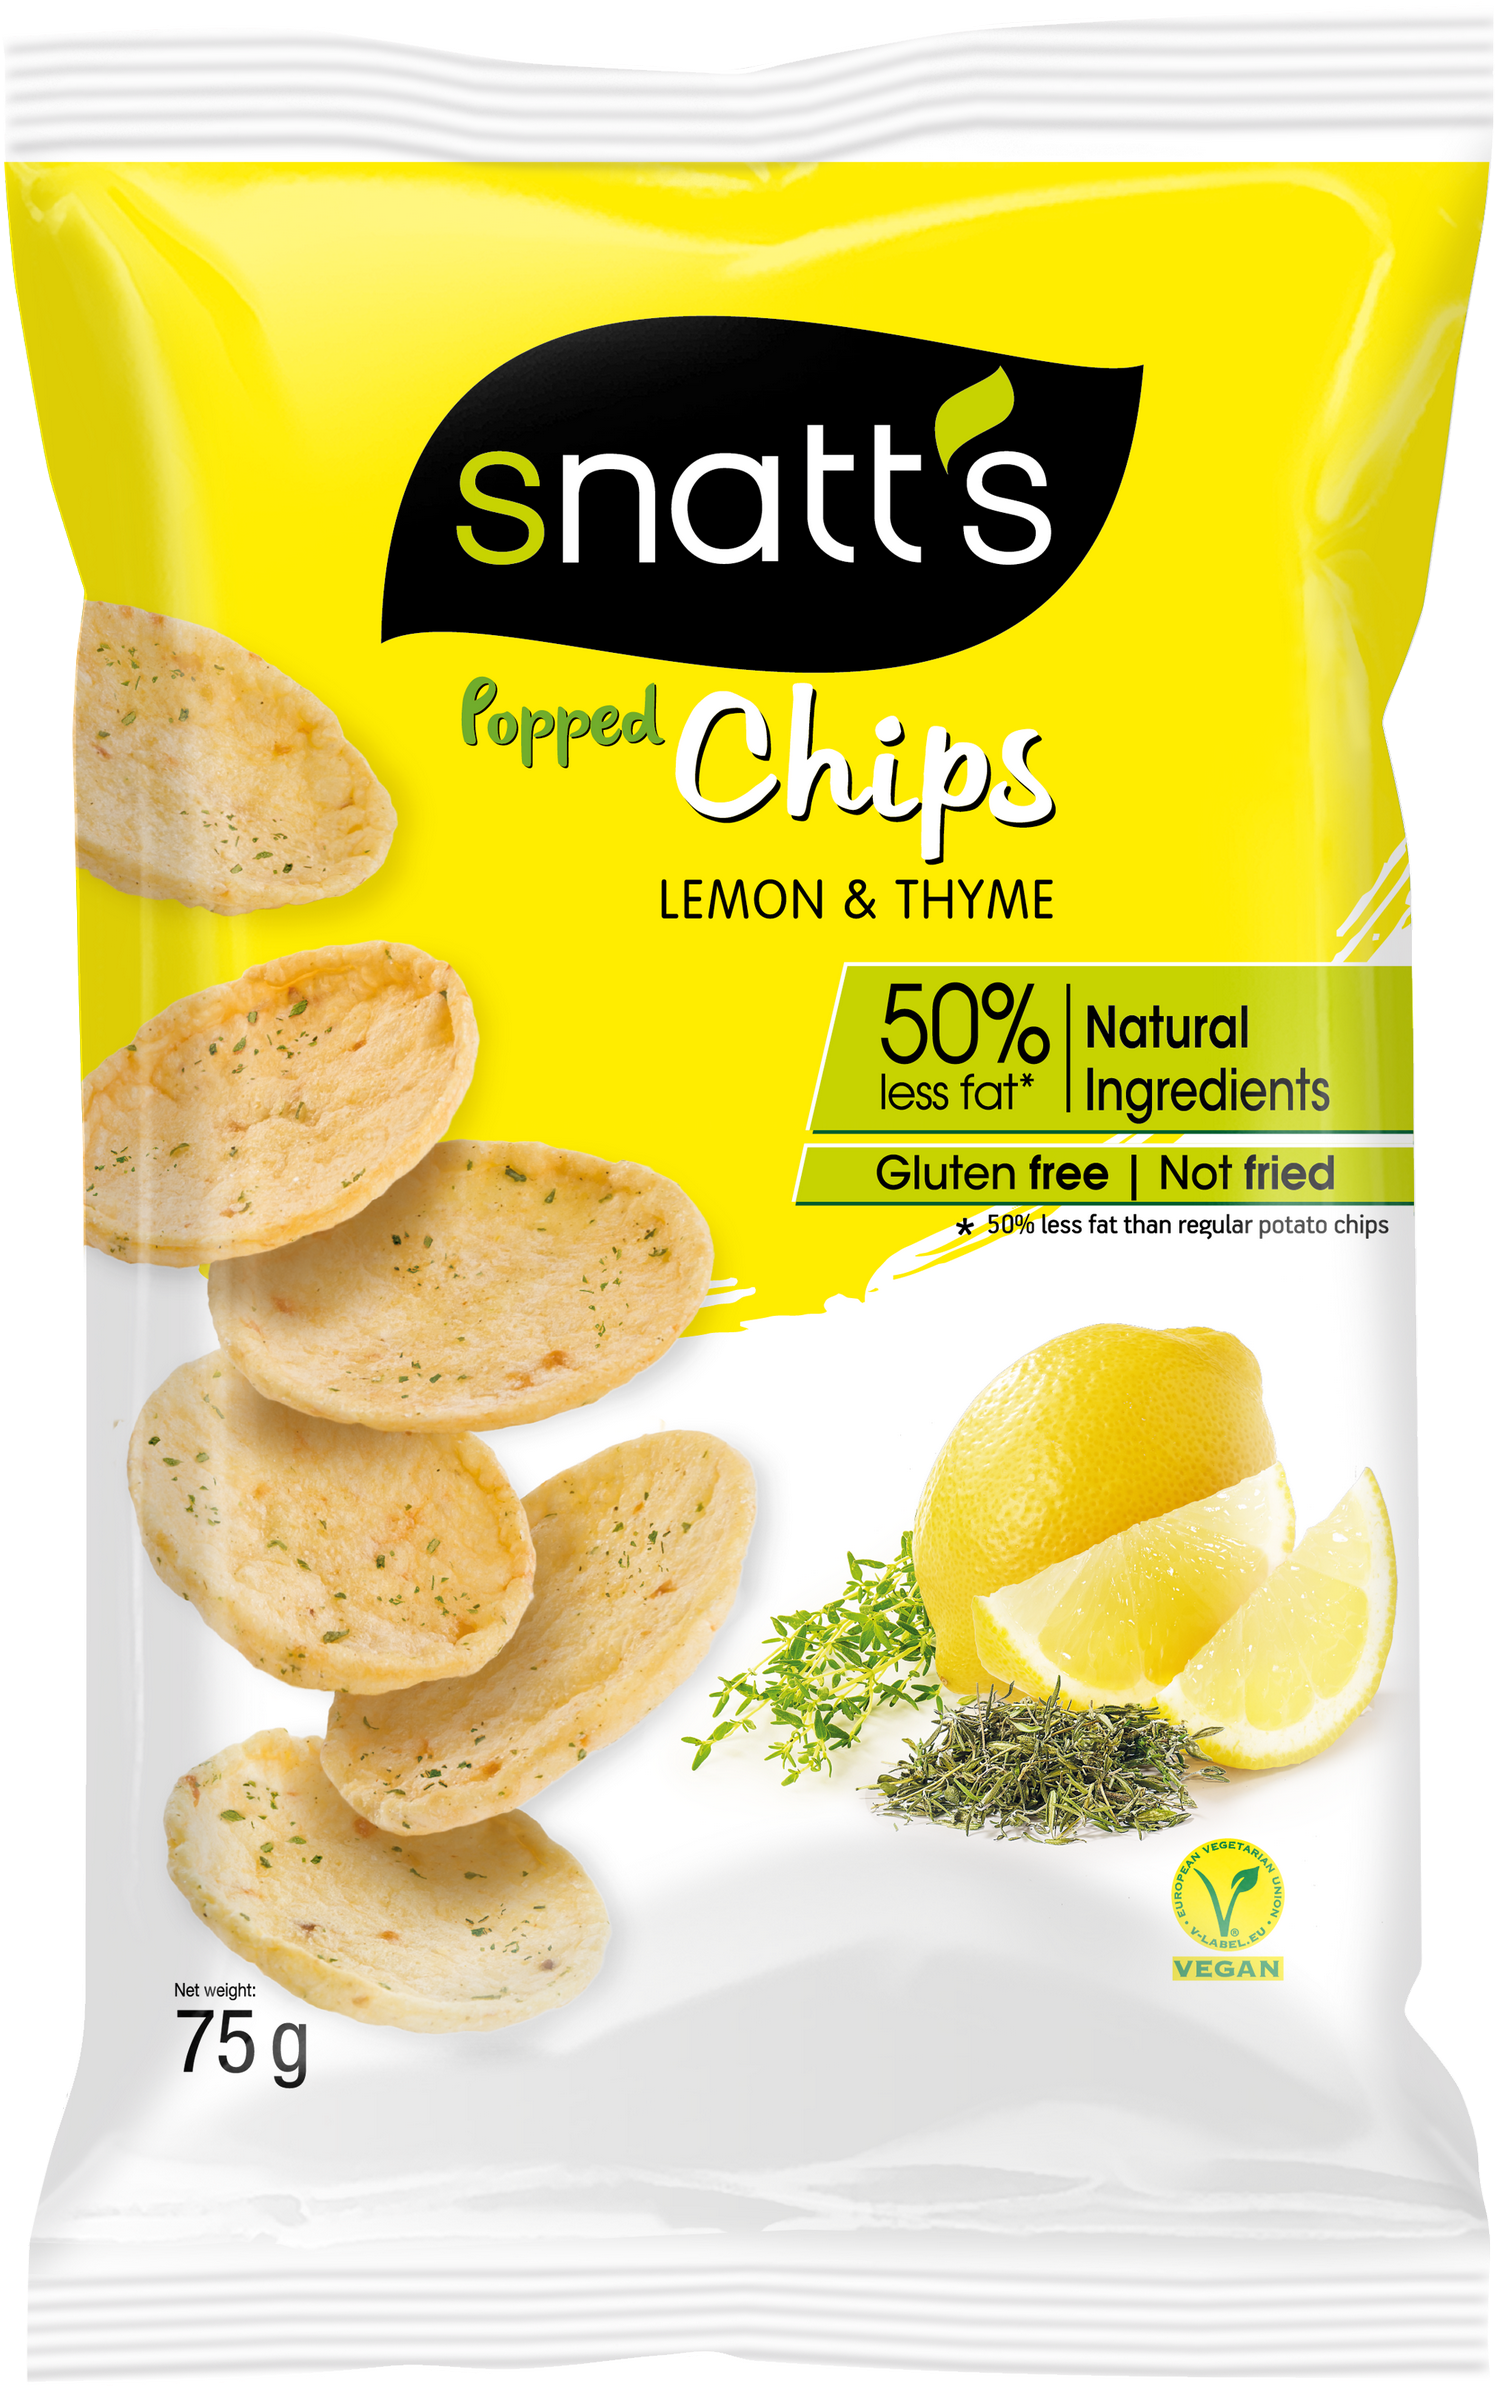 Snatts Popped Chips Lemon Thyme Packaging